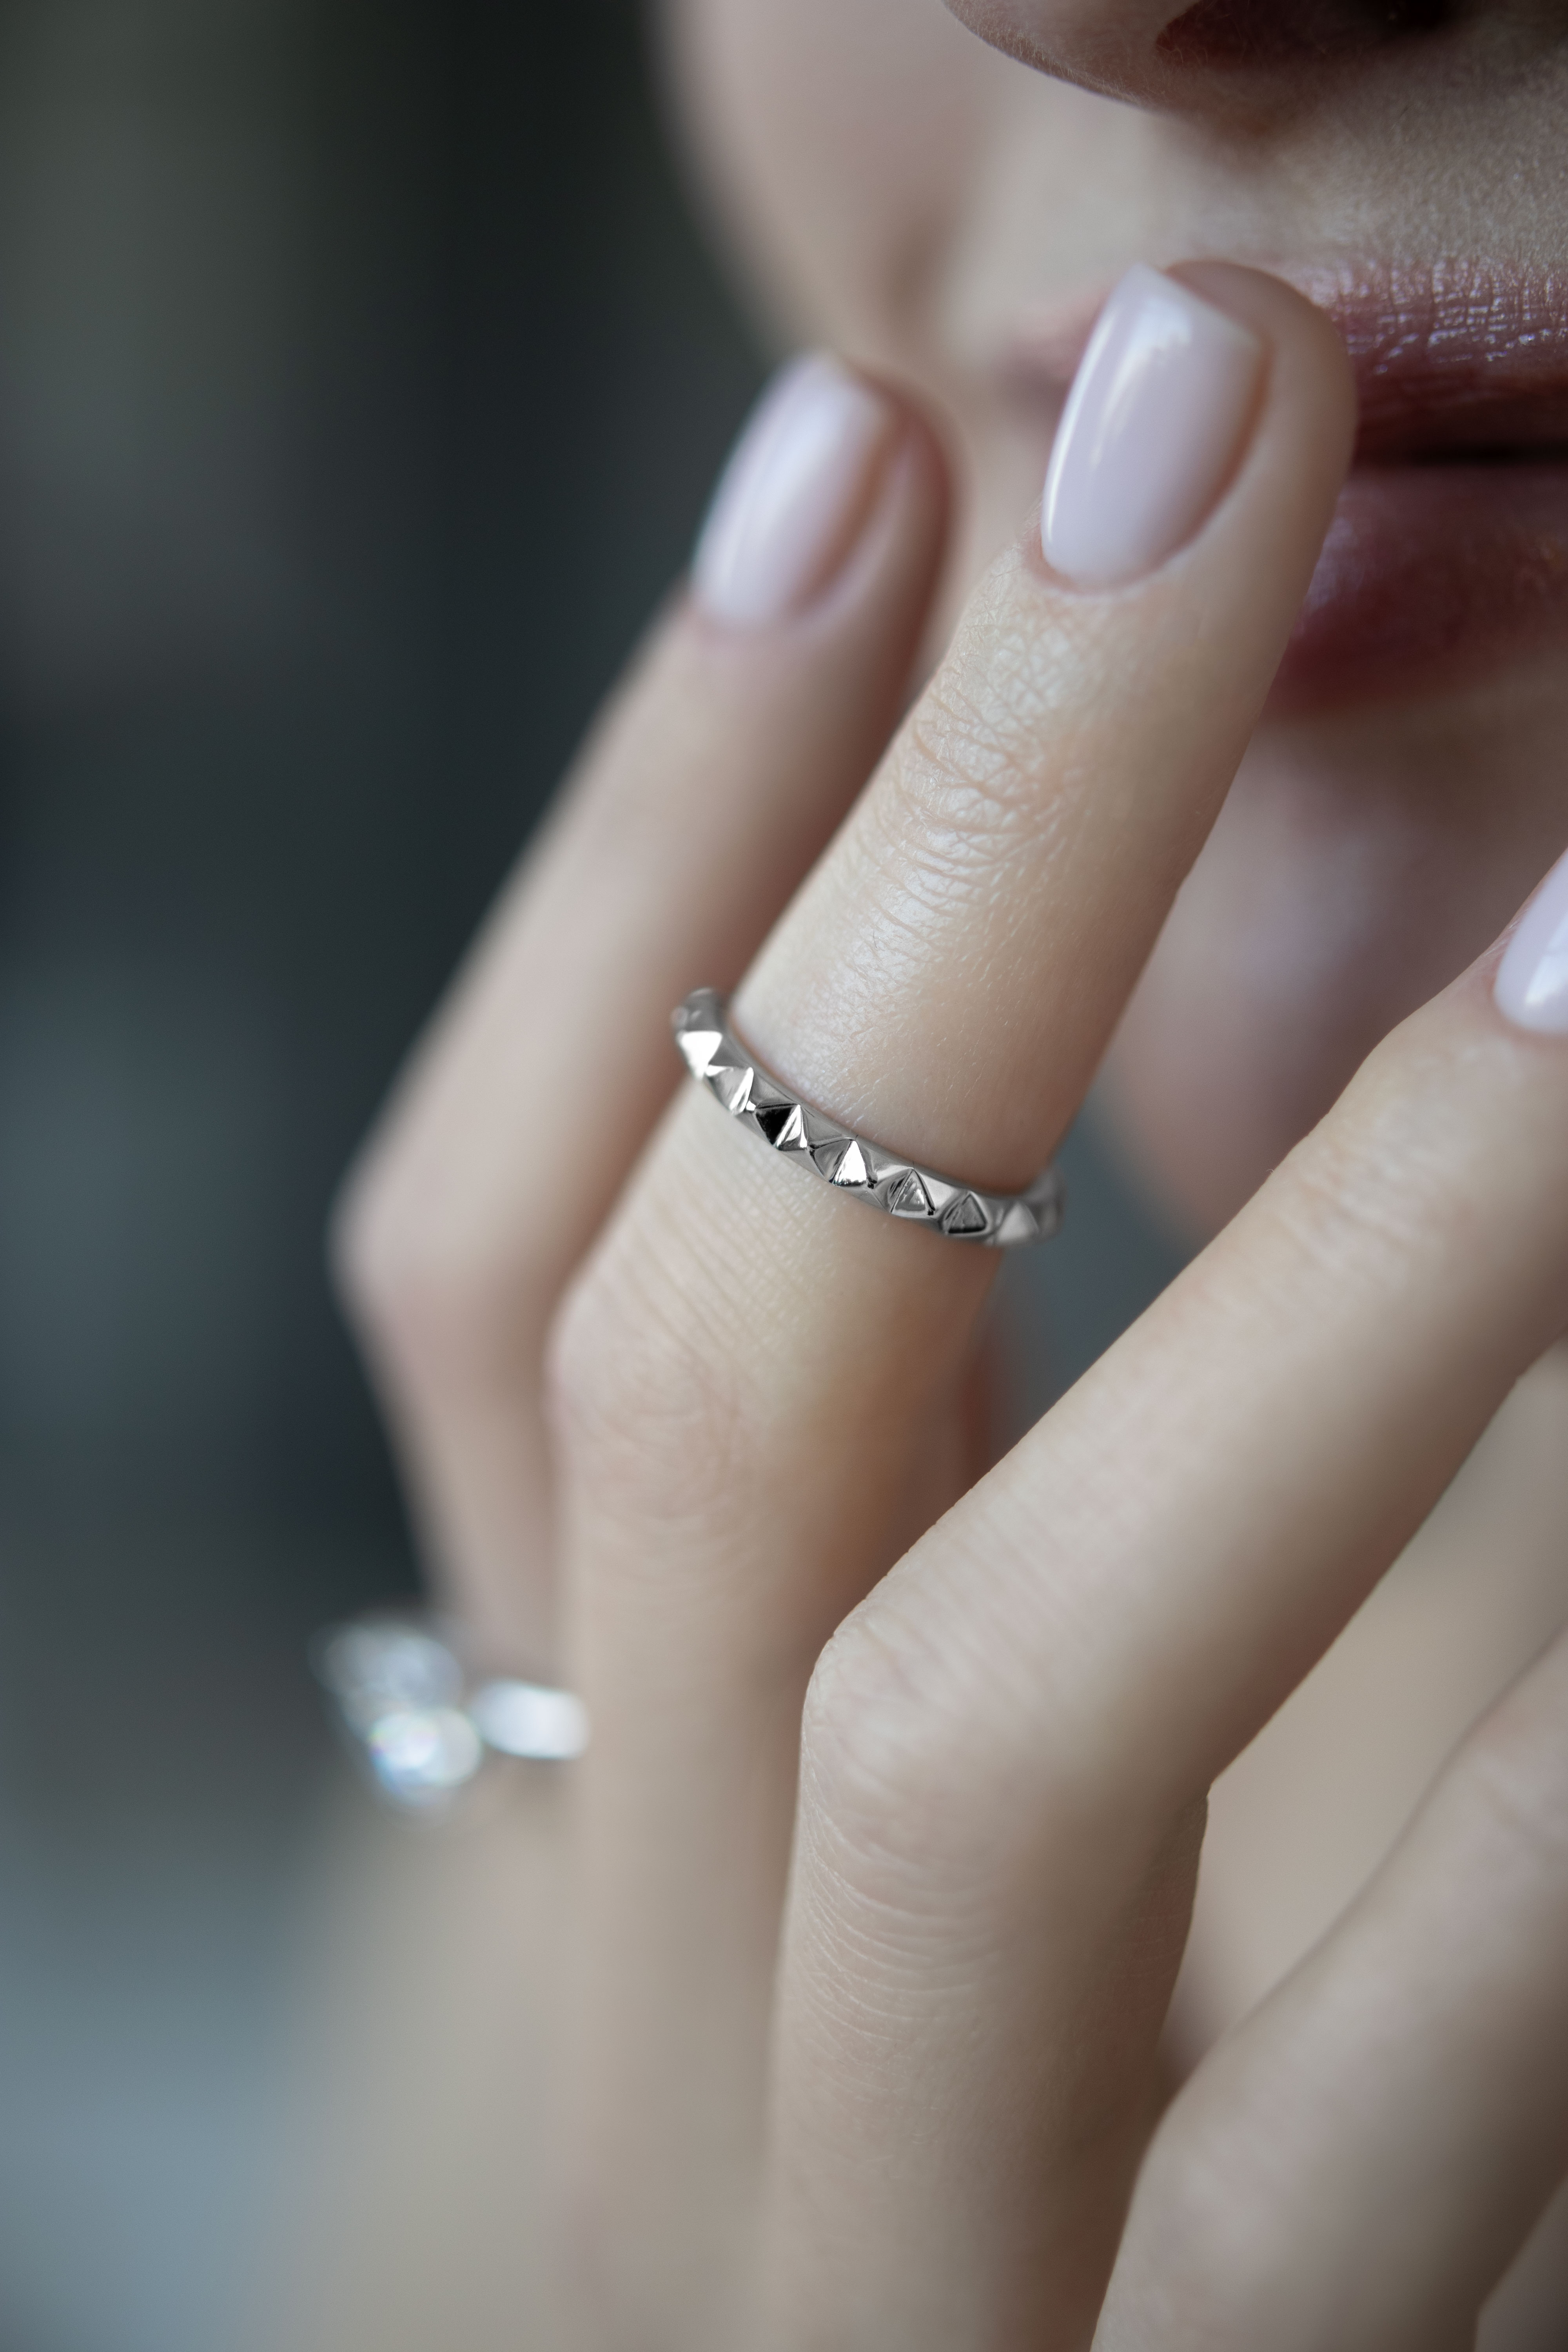 Кольца: Простое кольцо с шипами можно купить в ювелирном гардеробе MOMNT (Momentsilver), интернет-магазине украшений из серебра. Серебро 925, родий. Артикул 